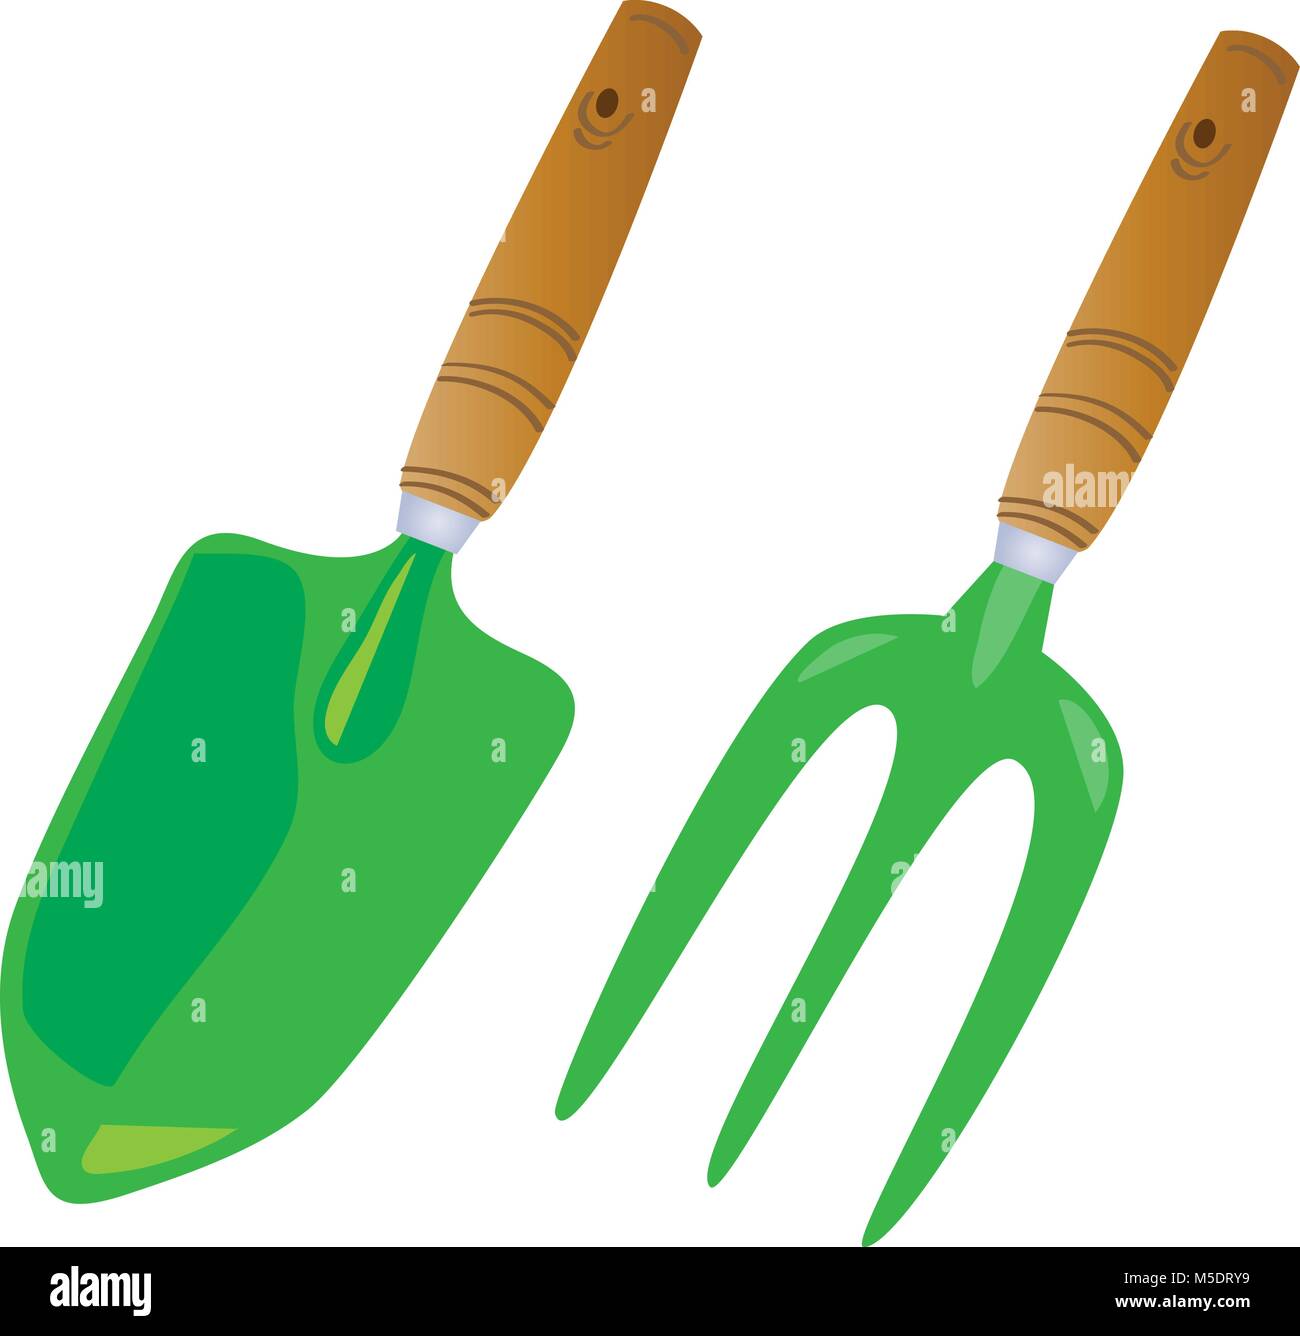 cartoon garden hand tools Stock Vector Image & Art - Alamy